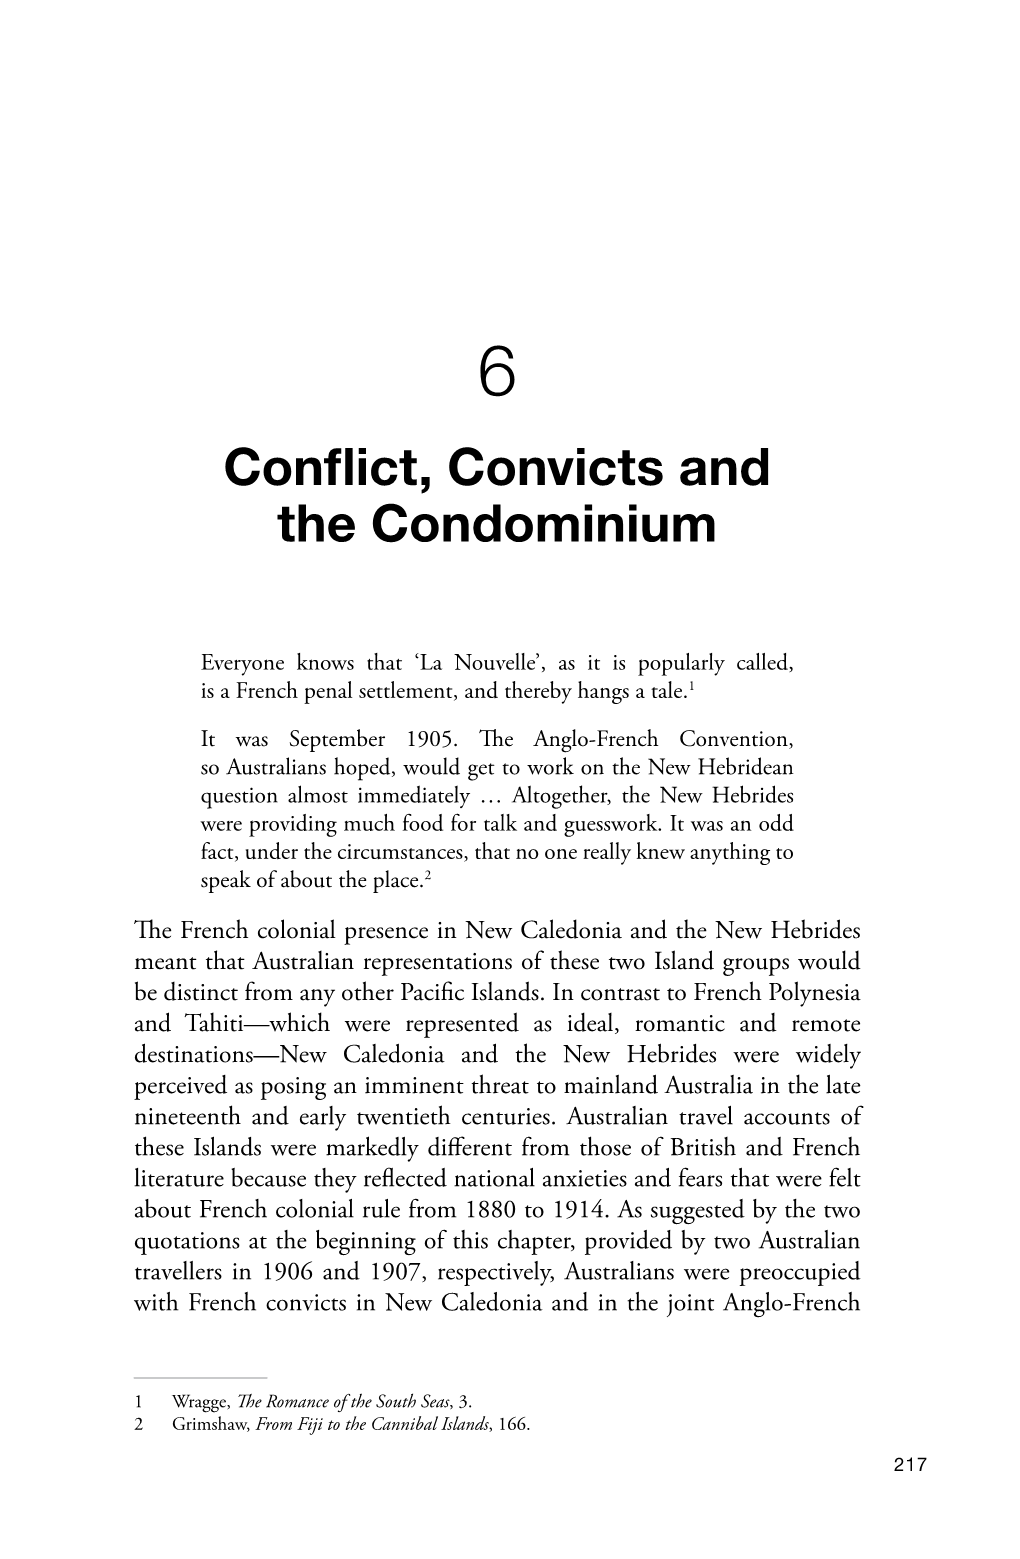 6. Conflict, Convicts and the Condominium